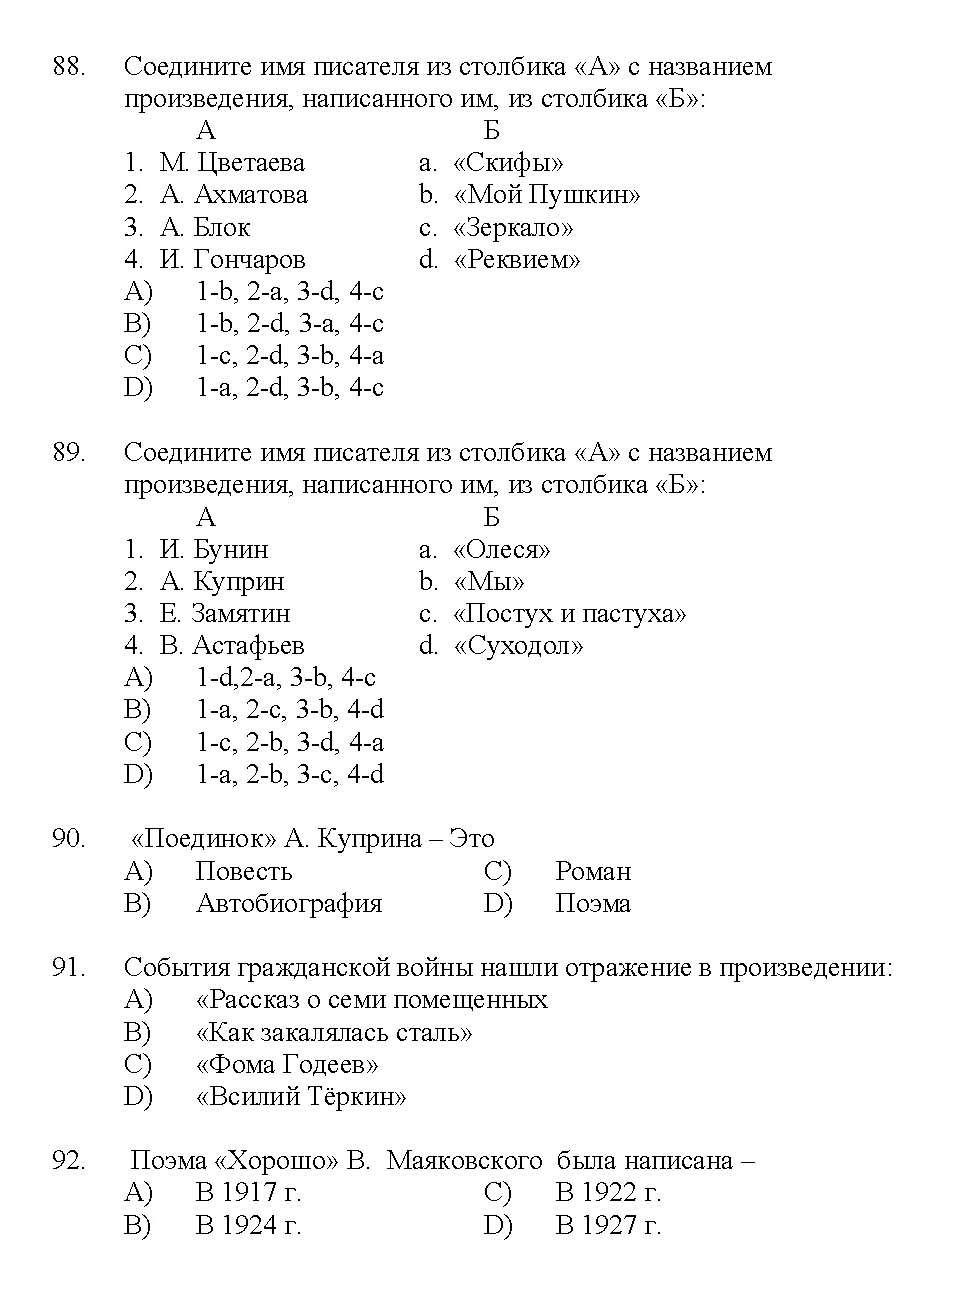 Kerala SET Russian Exam 2017 Question Code 17227 A 15